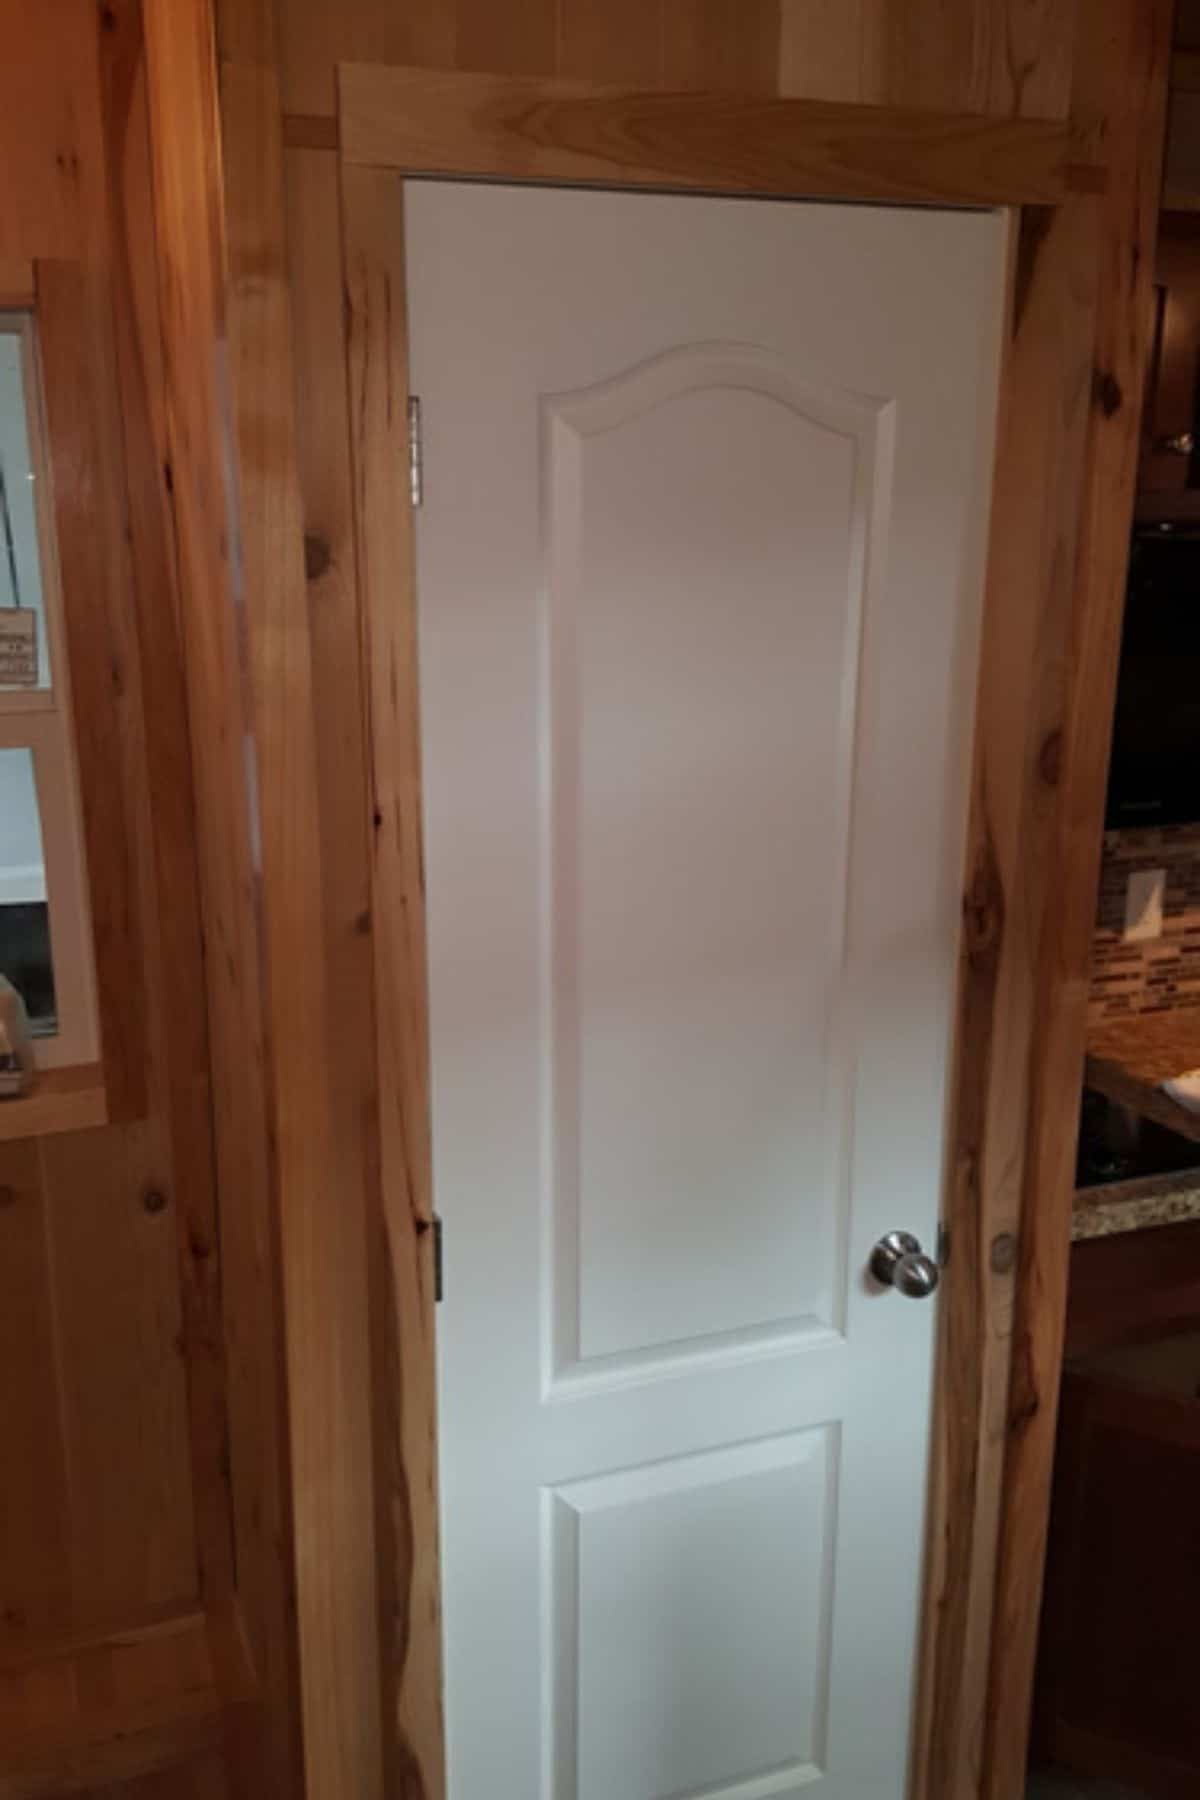 White door in wood frame